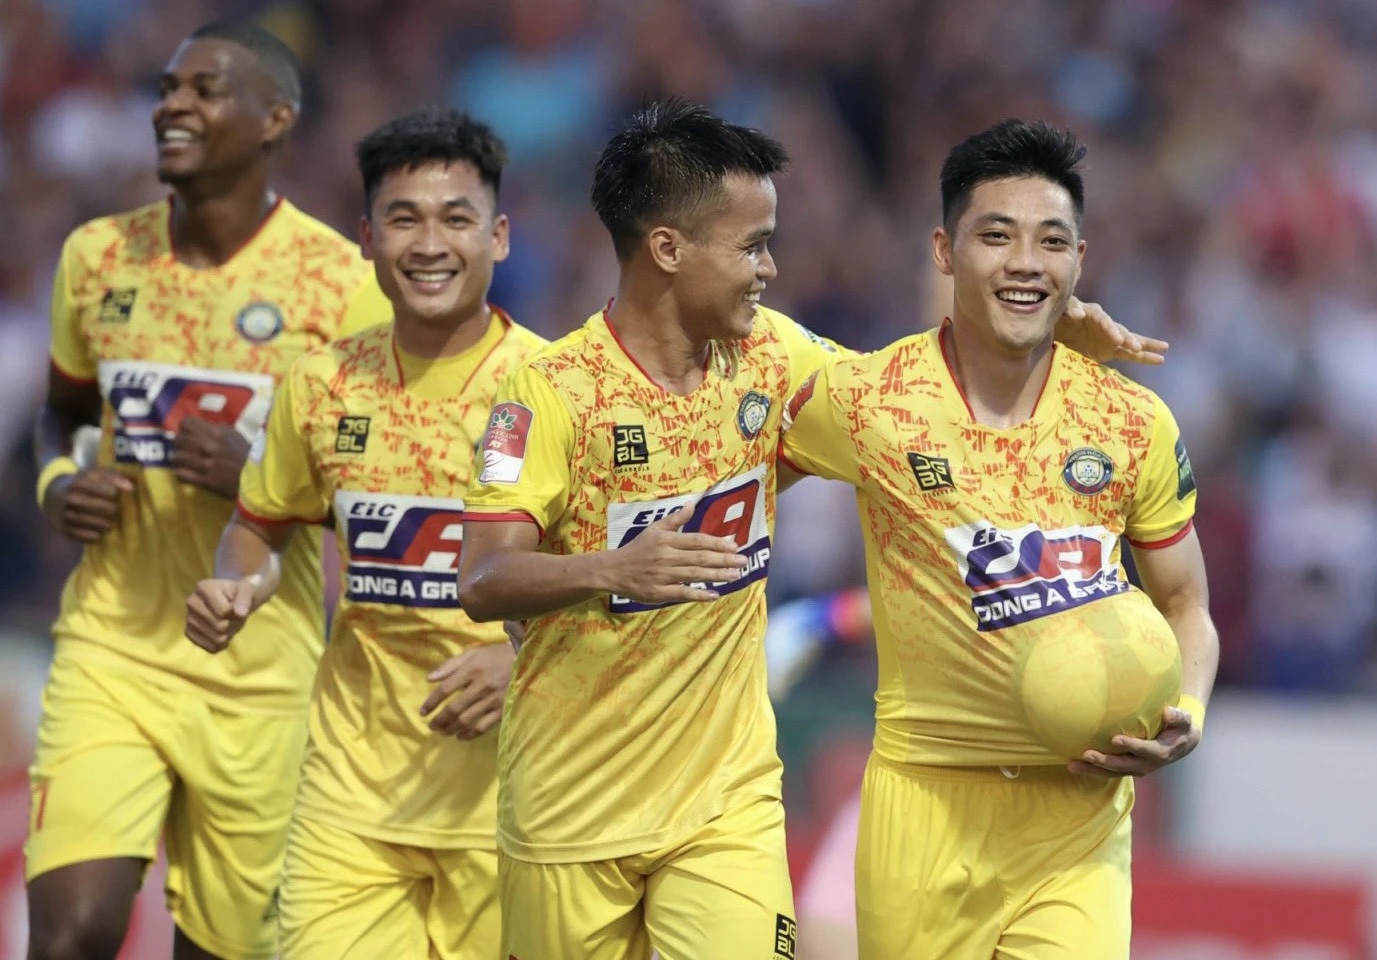 CLB Thanh Hóa đi vào lịch sử bóng đá Việt Nam với thành tích vô tiền khoáng hậu - Ảnh 1.